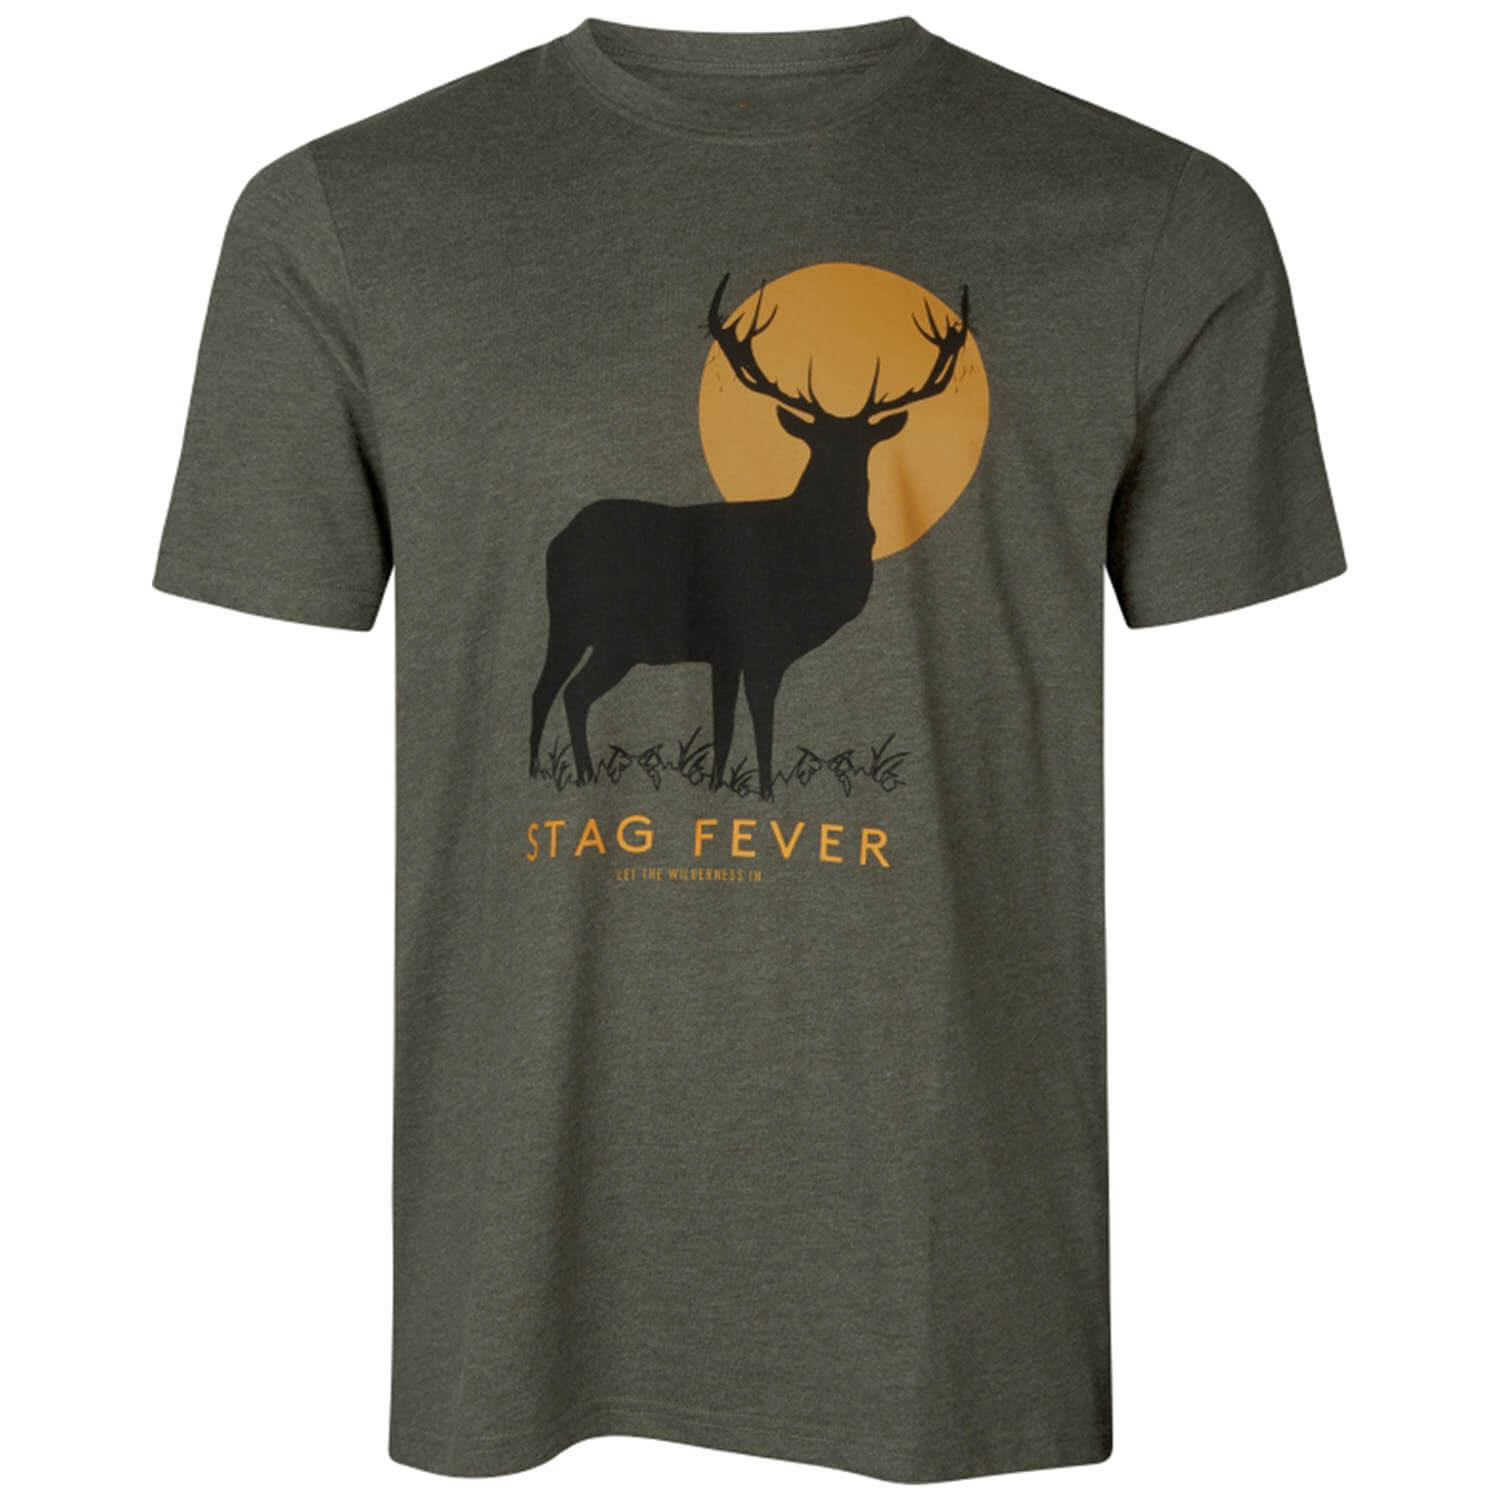 Seeland T-Shirt Stag Fever (Pine Green) - Hemden & Shirts